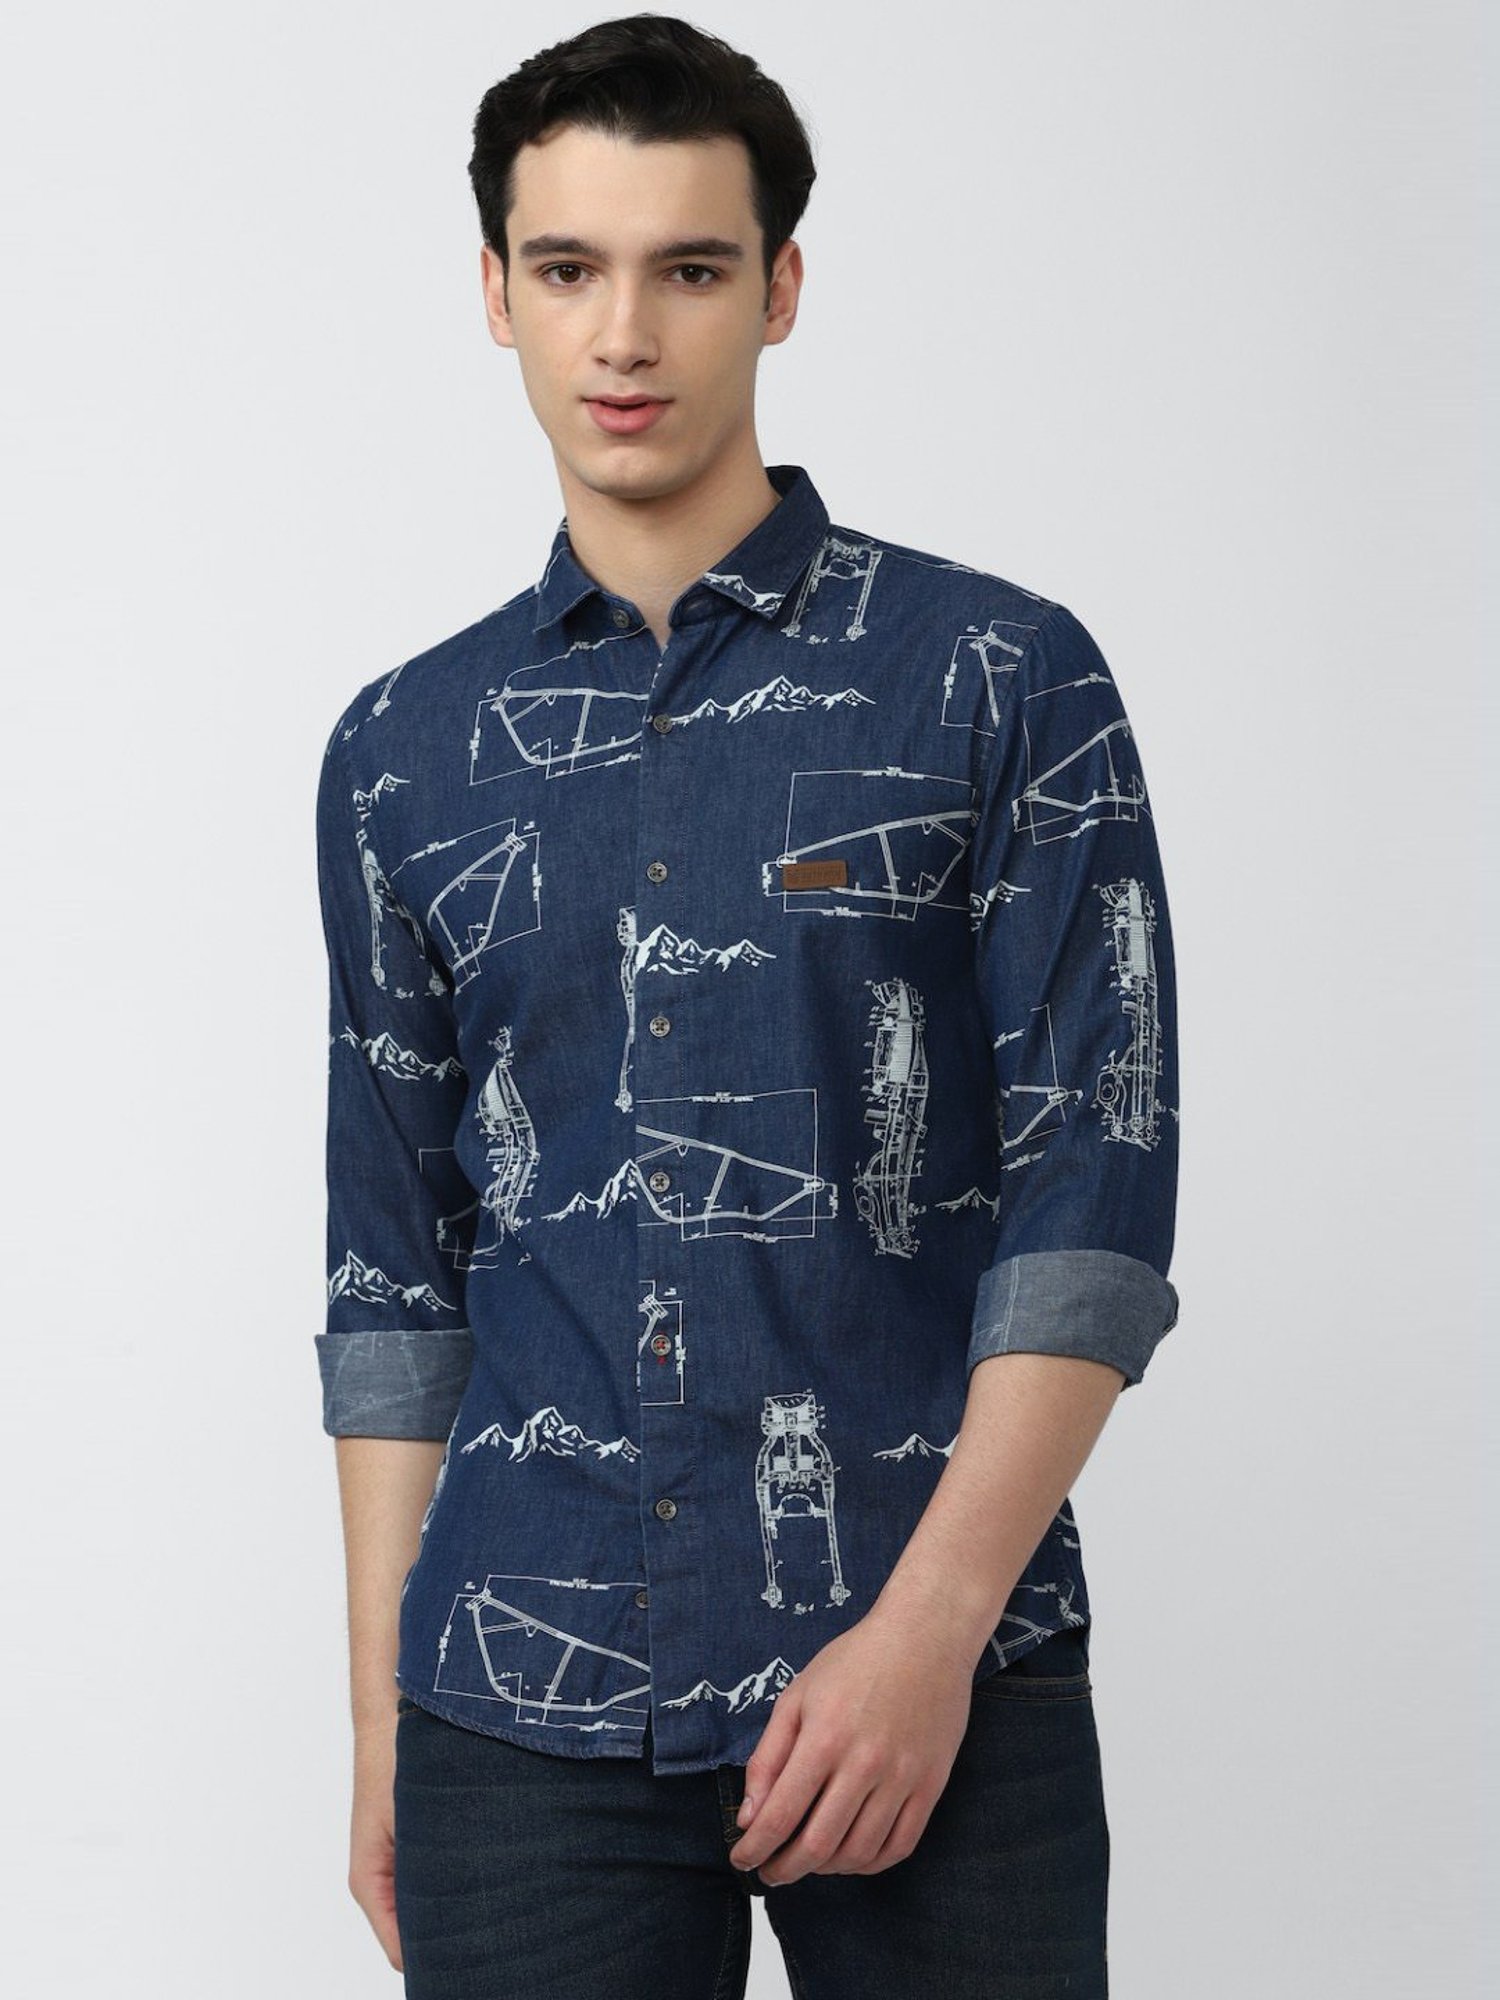 Men's Navy Blue Rayon Printed Casual Shirts